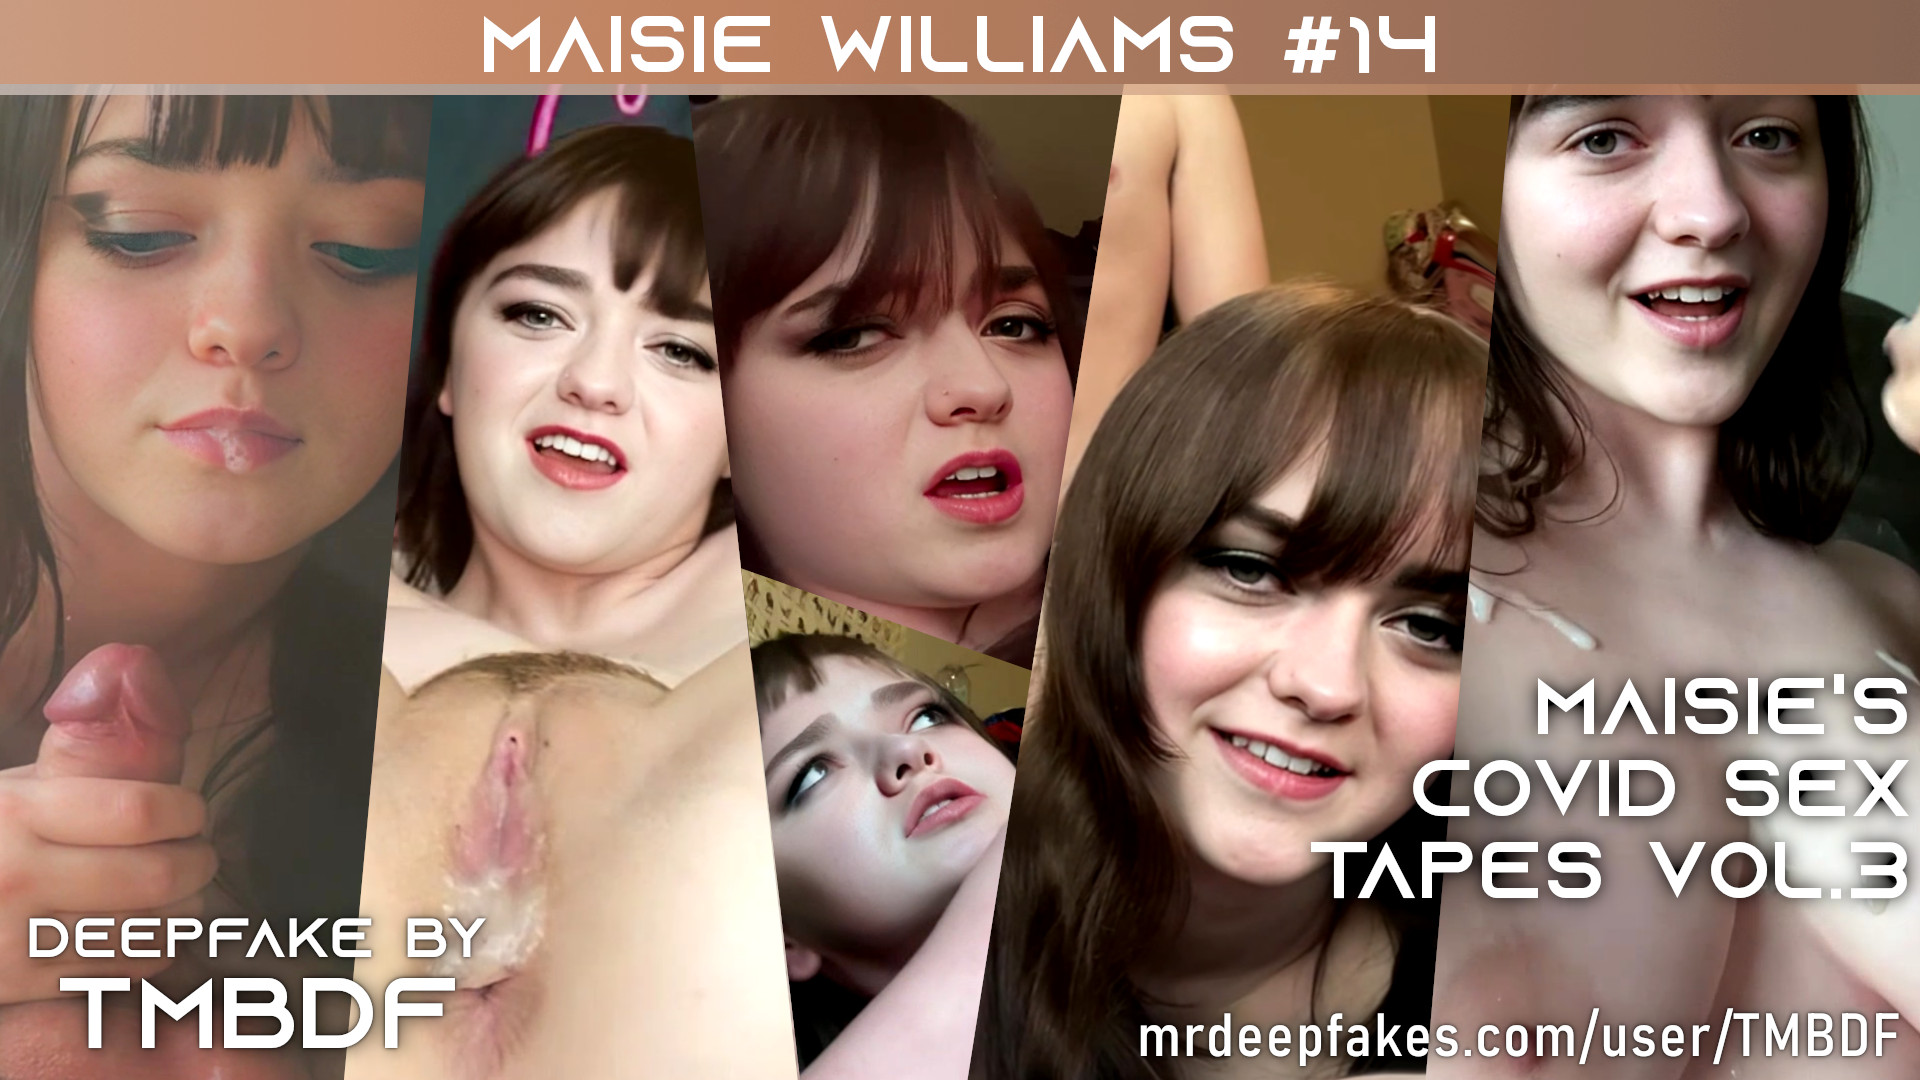 Maisie Williams #14 - PREVIEW - Full version (19:40) in video description